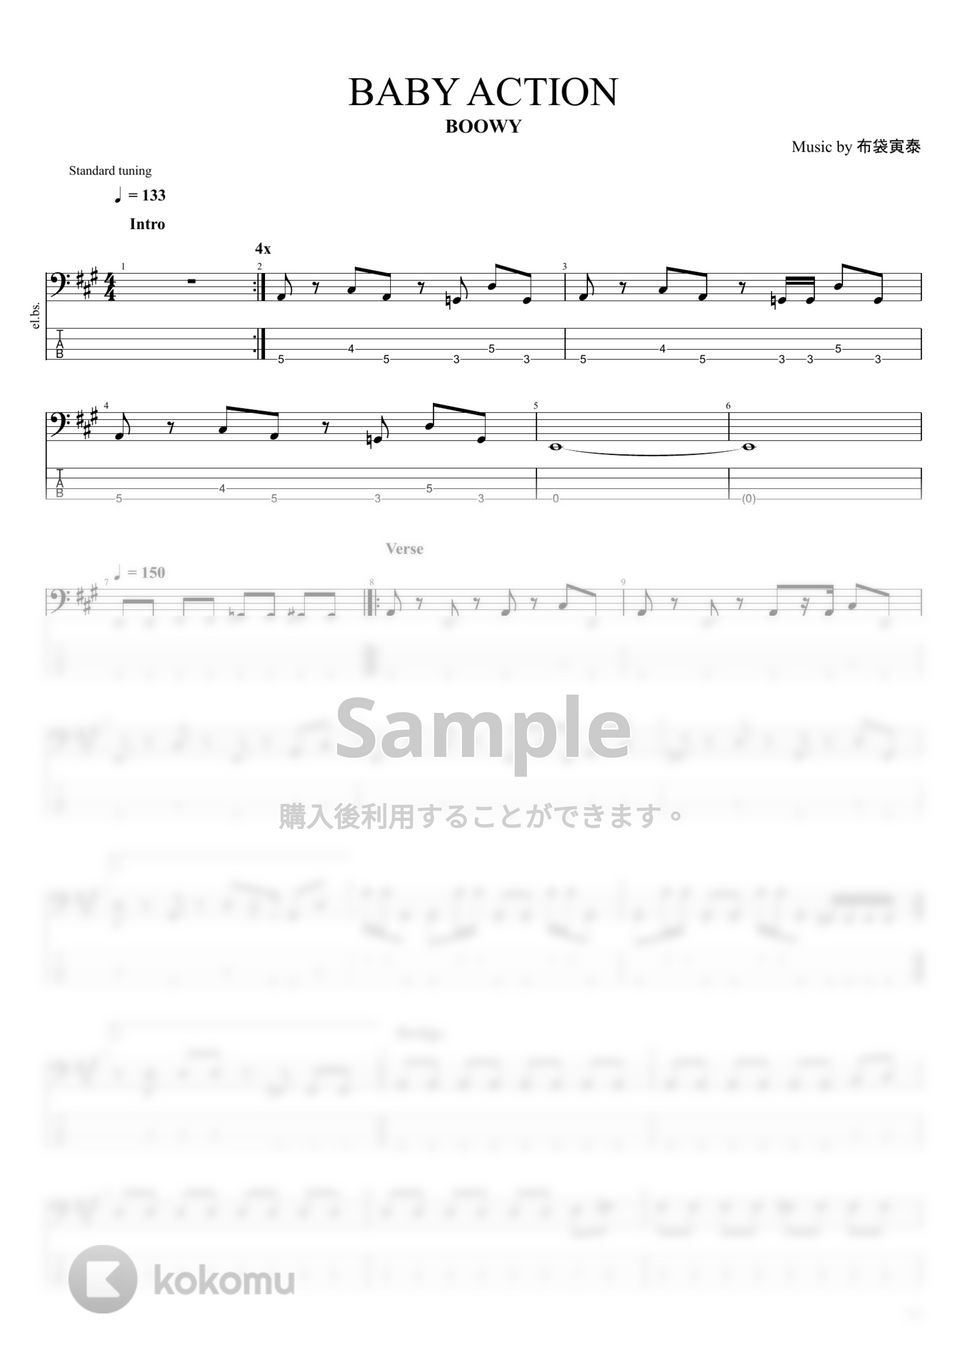 BOOWY - BOOWY楽譜集Vol.２ (15曲) by まっきん